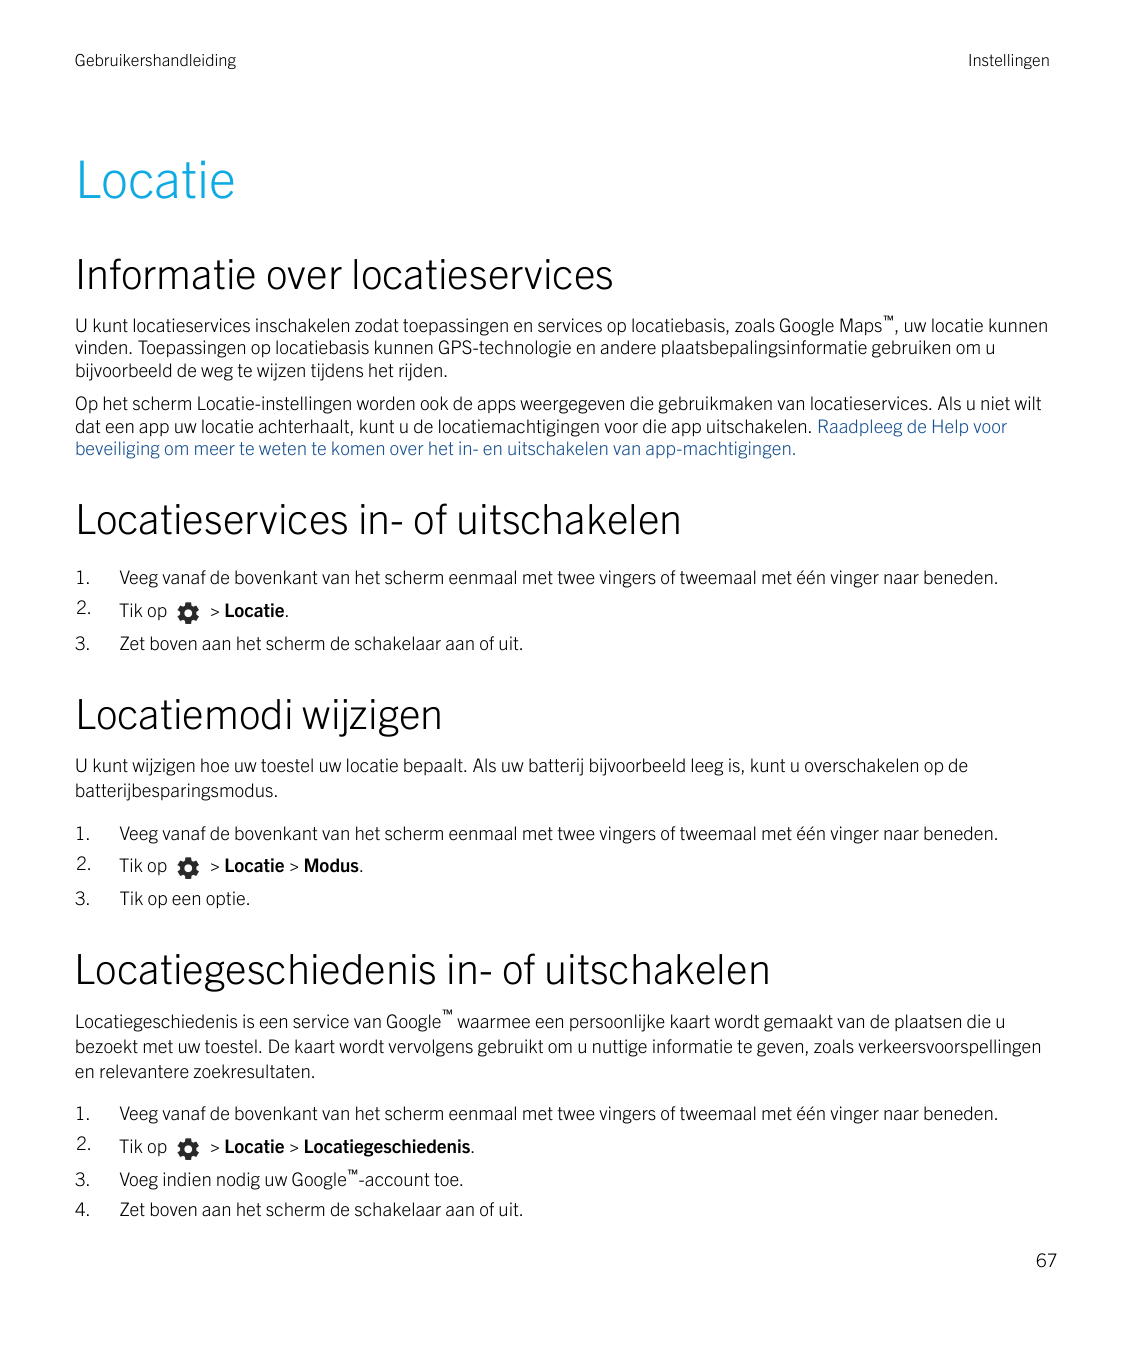 GebruikershandleidingInstellingenLocatieInformatie over locatieservicesU kunt locatieservices inschakelen zodat toepassingen en 